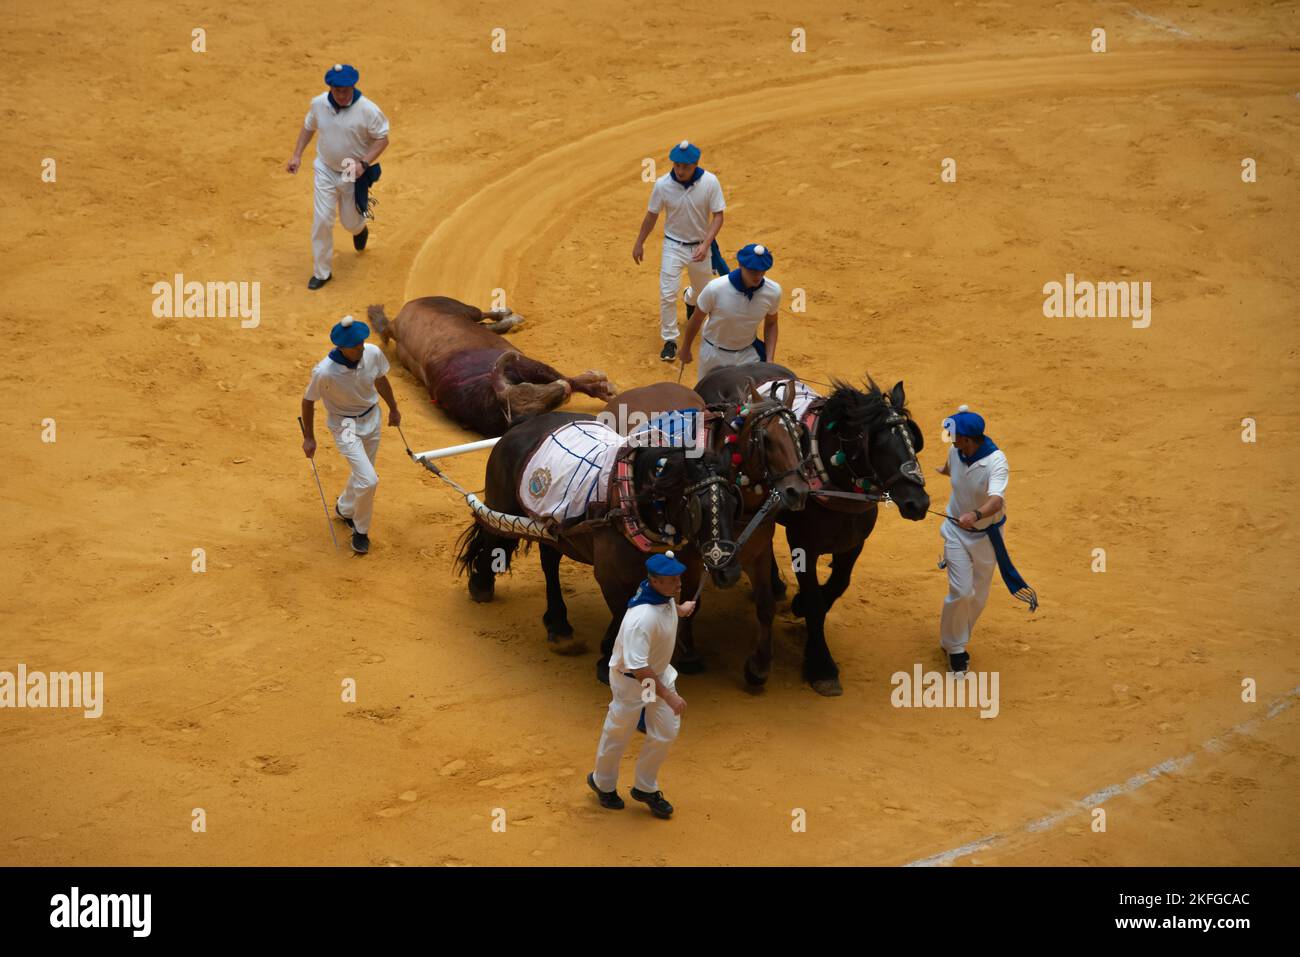 La traditionnelle corrida espagnole, pays basque, Espagne Banque D'Images